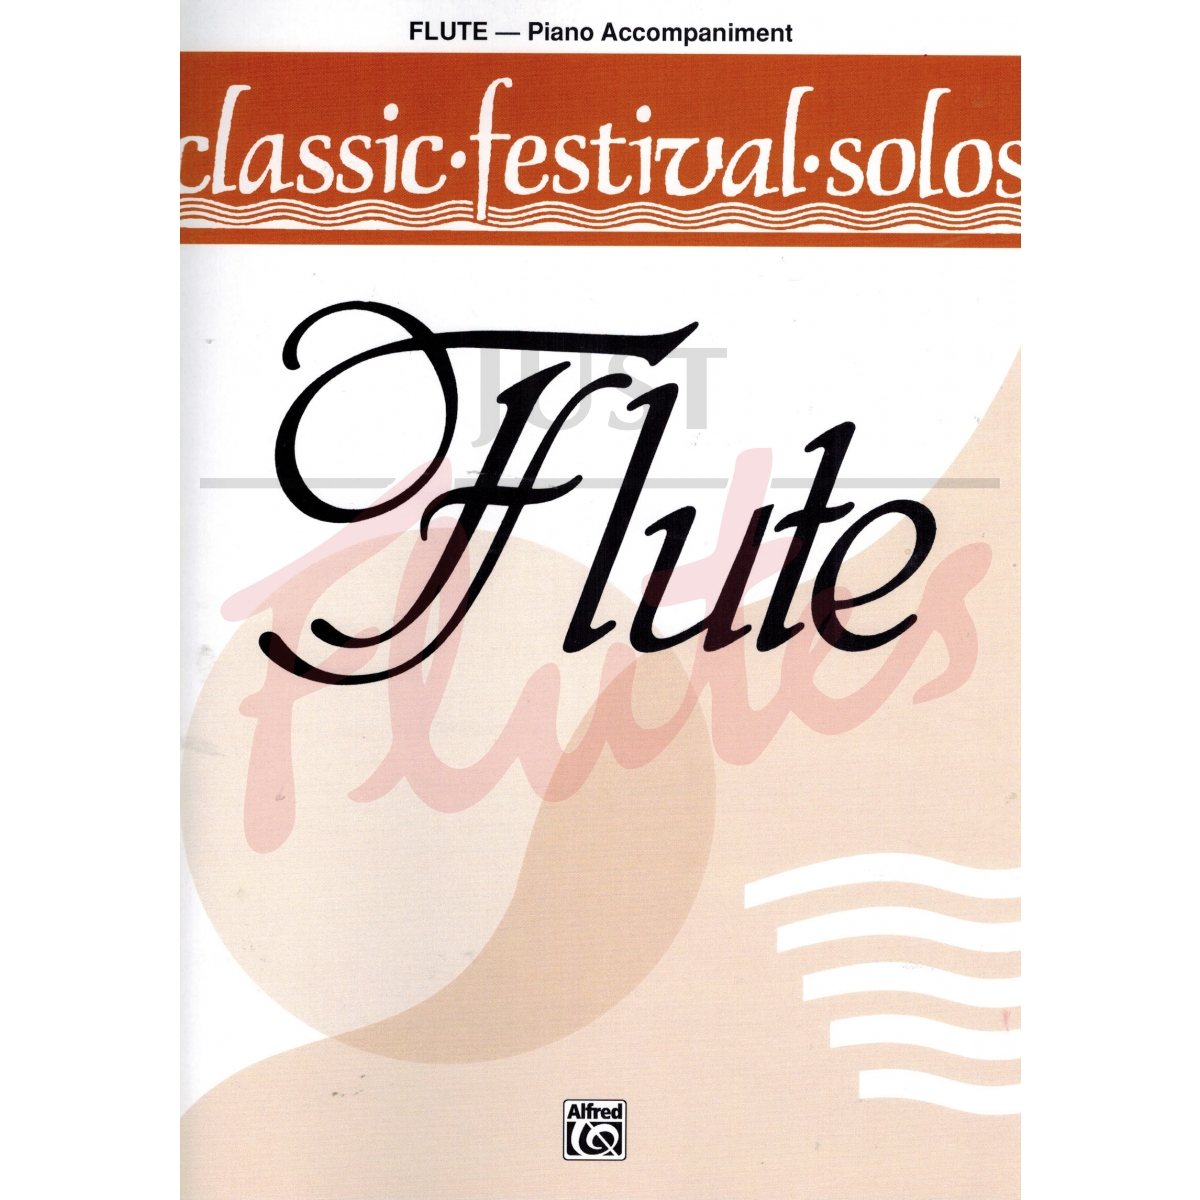 Classic Festival Solos [Piano Part]